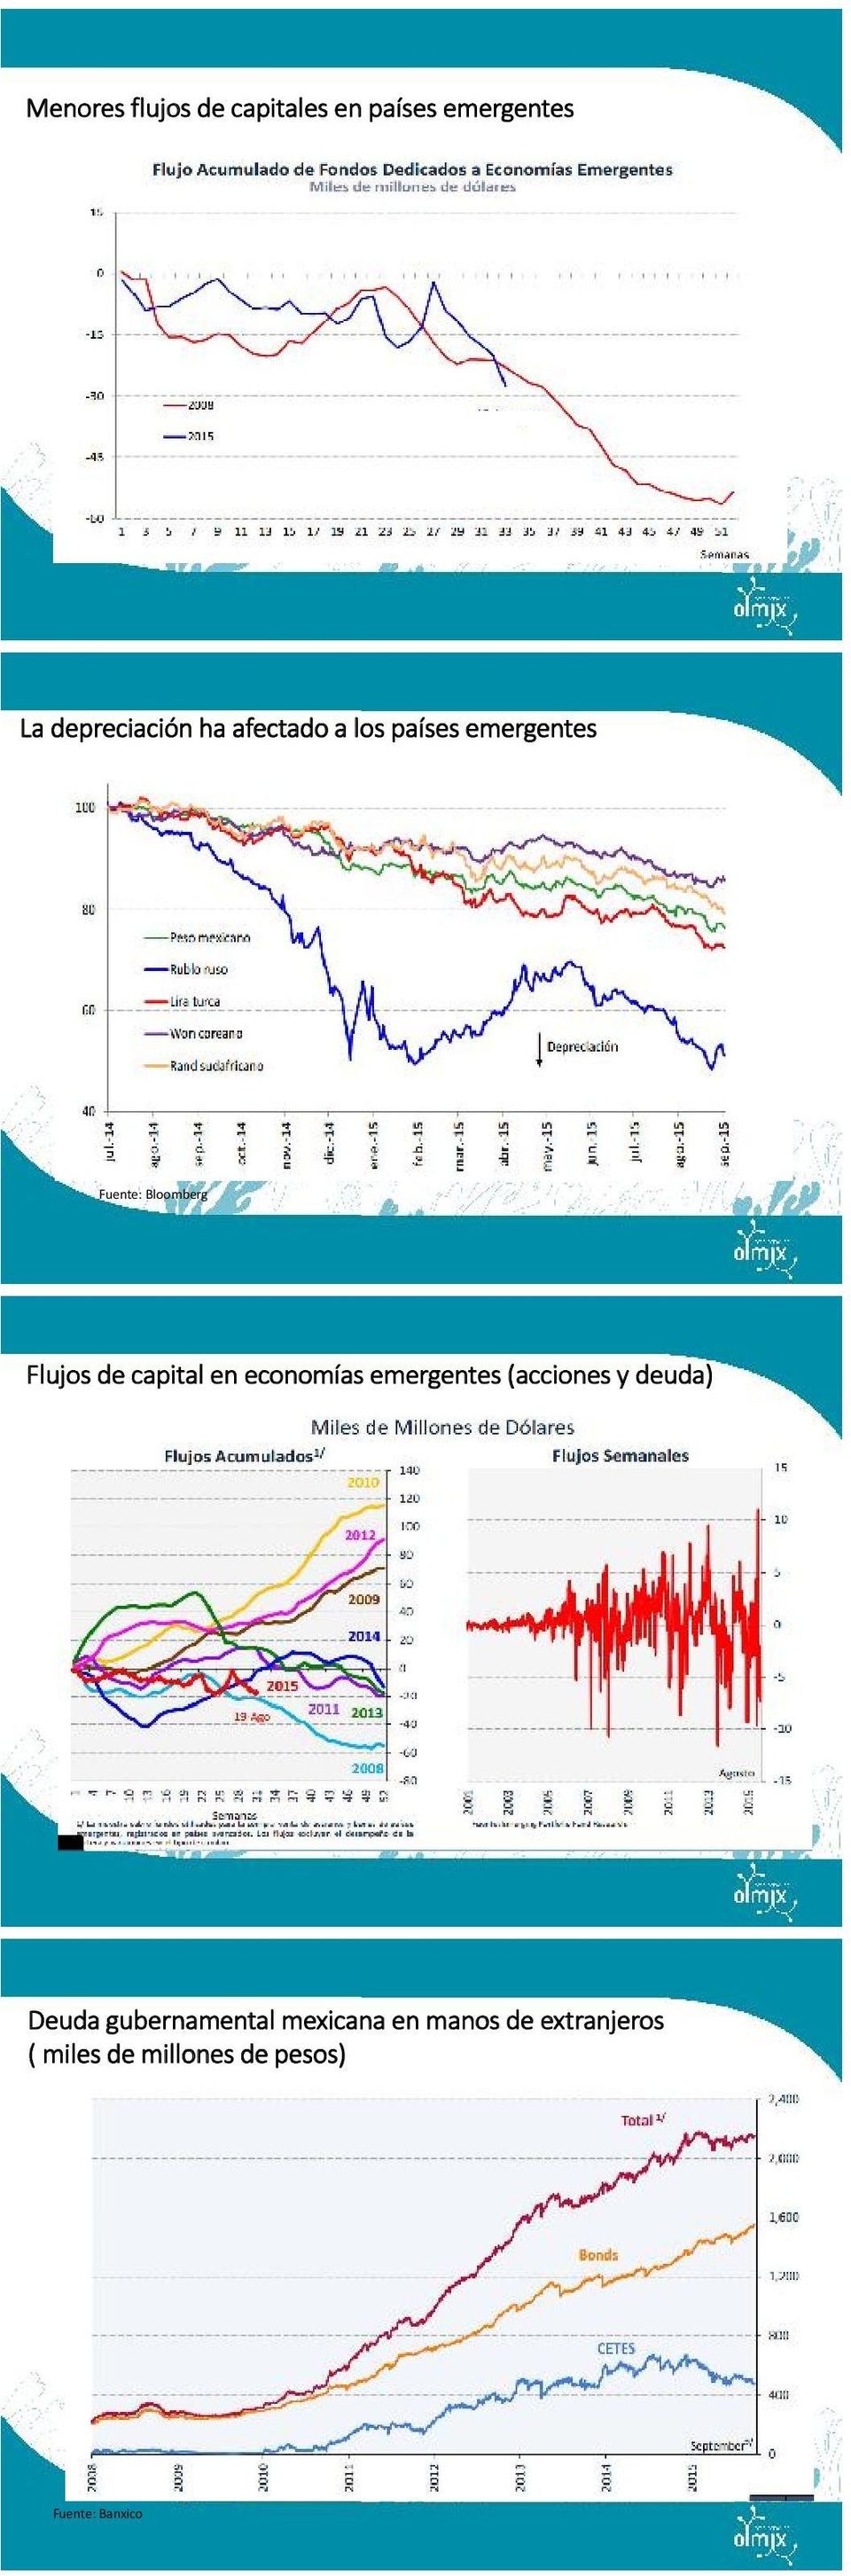 en economías emergentes (acciones y deuda) Deuda gubernamental